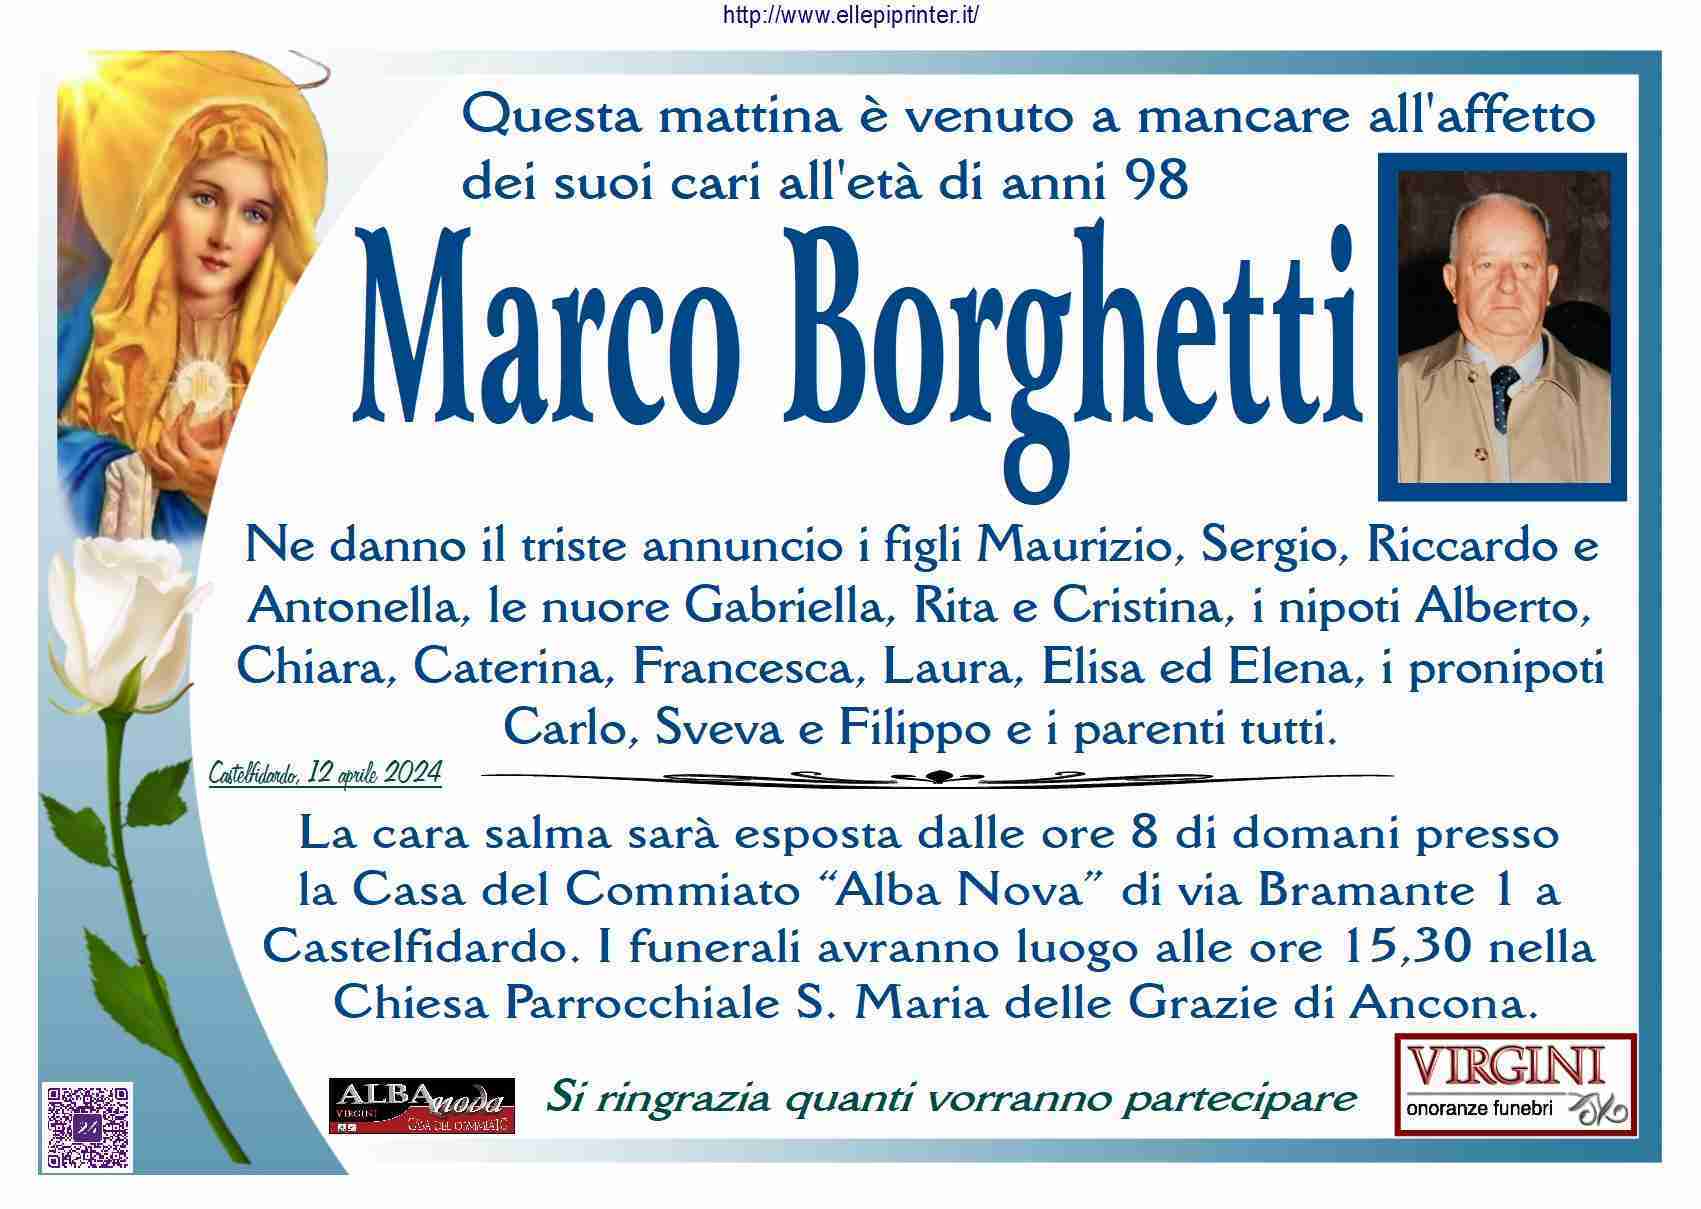 Marco Borghetti